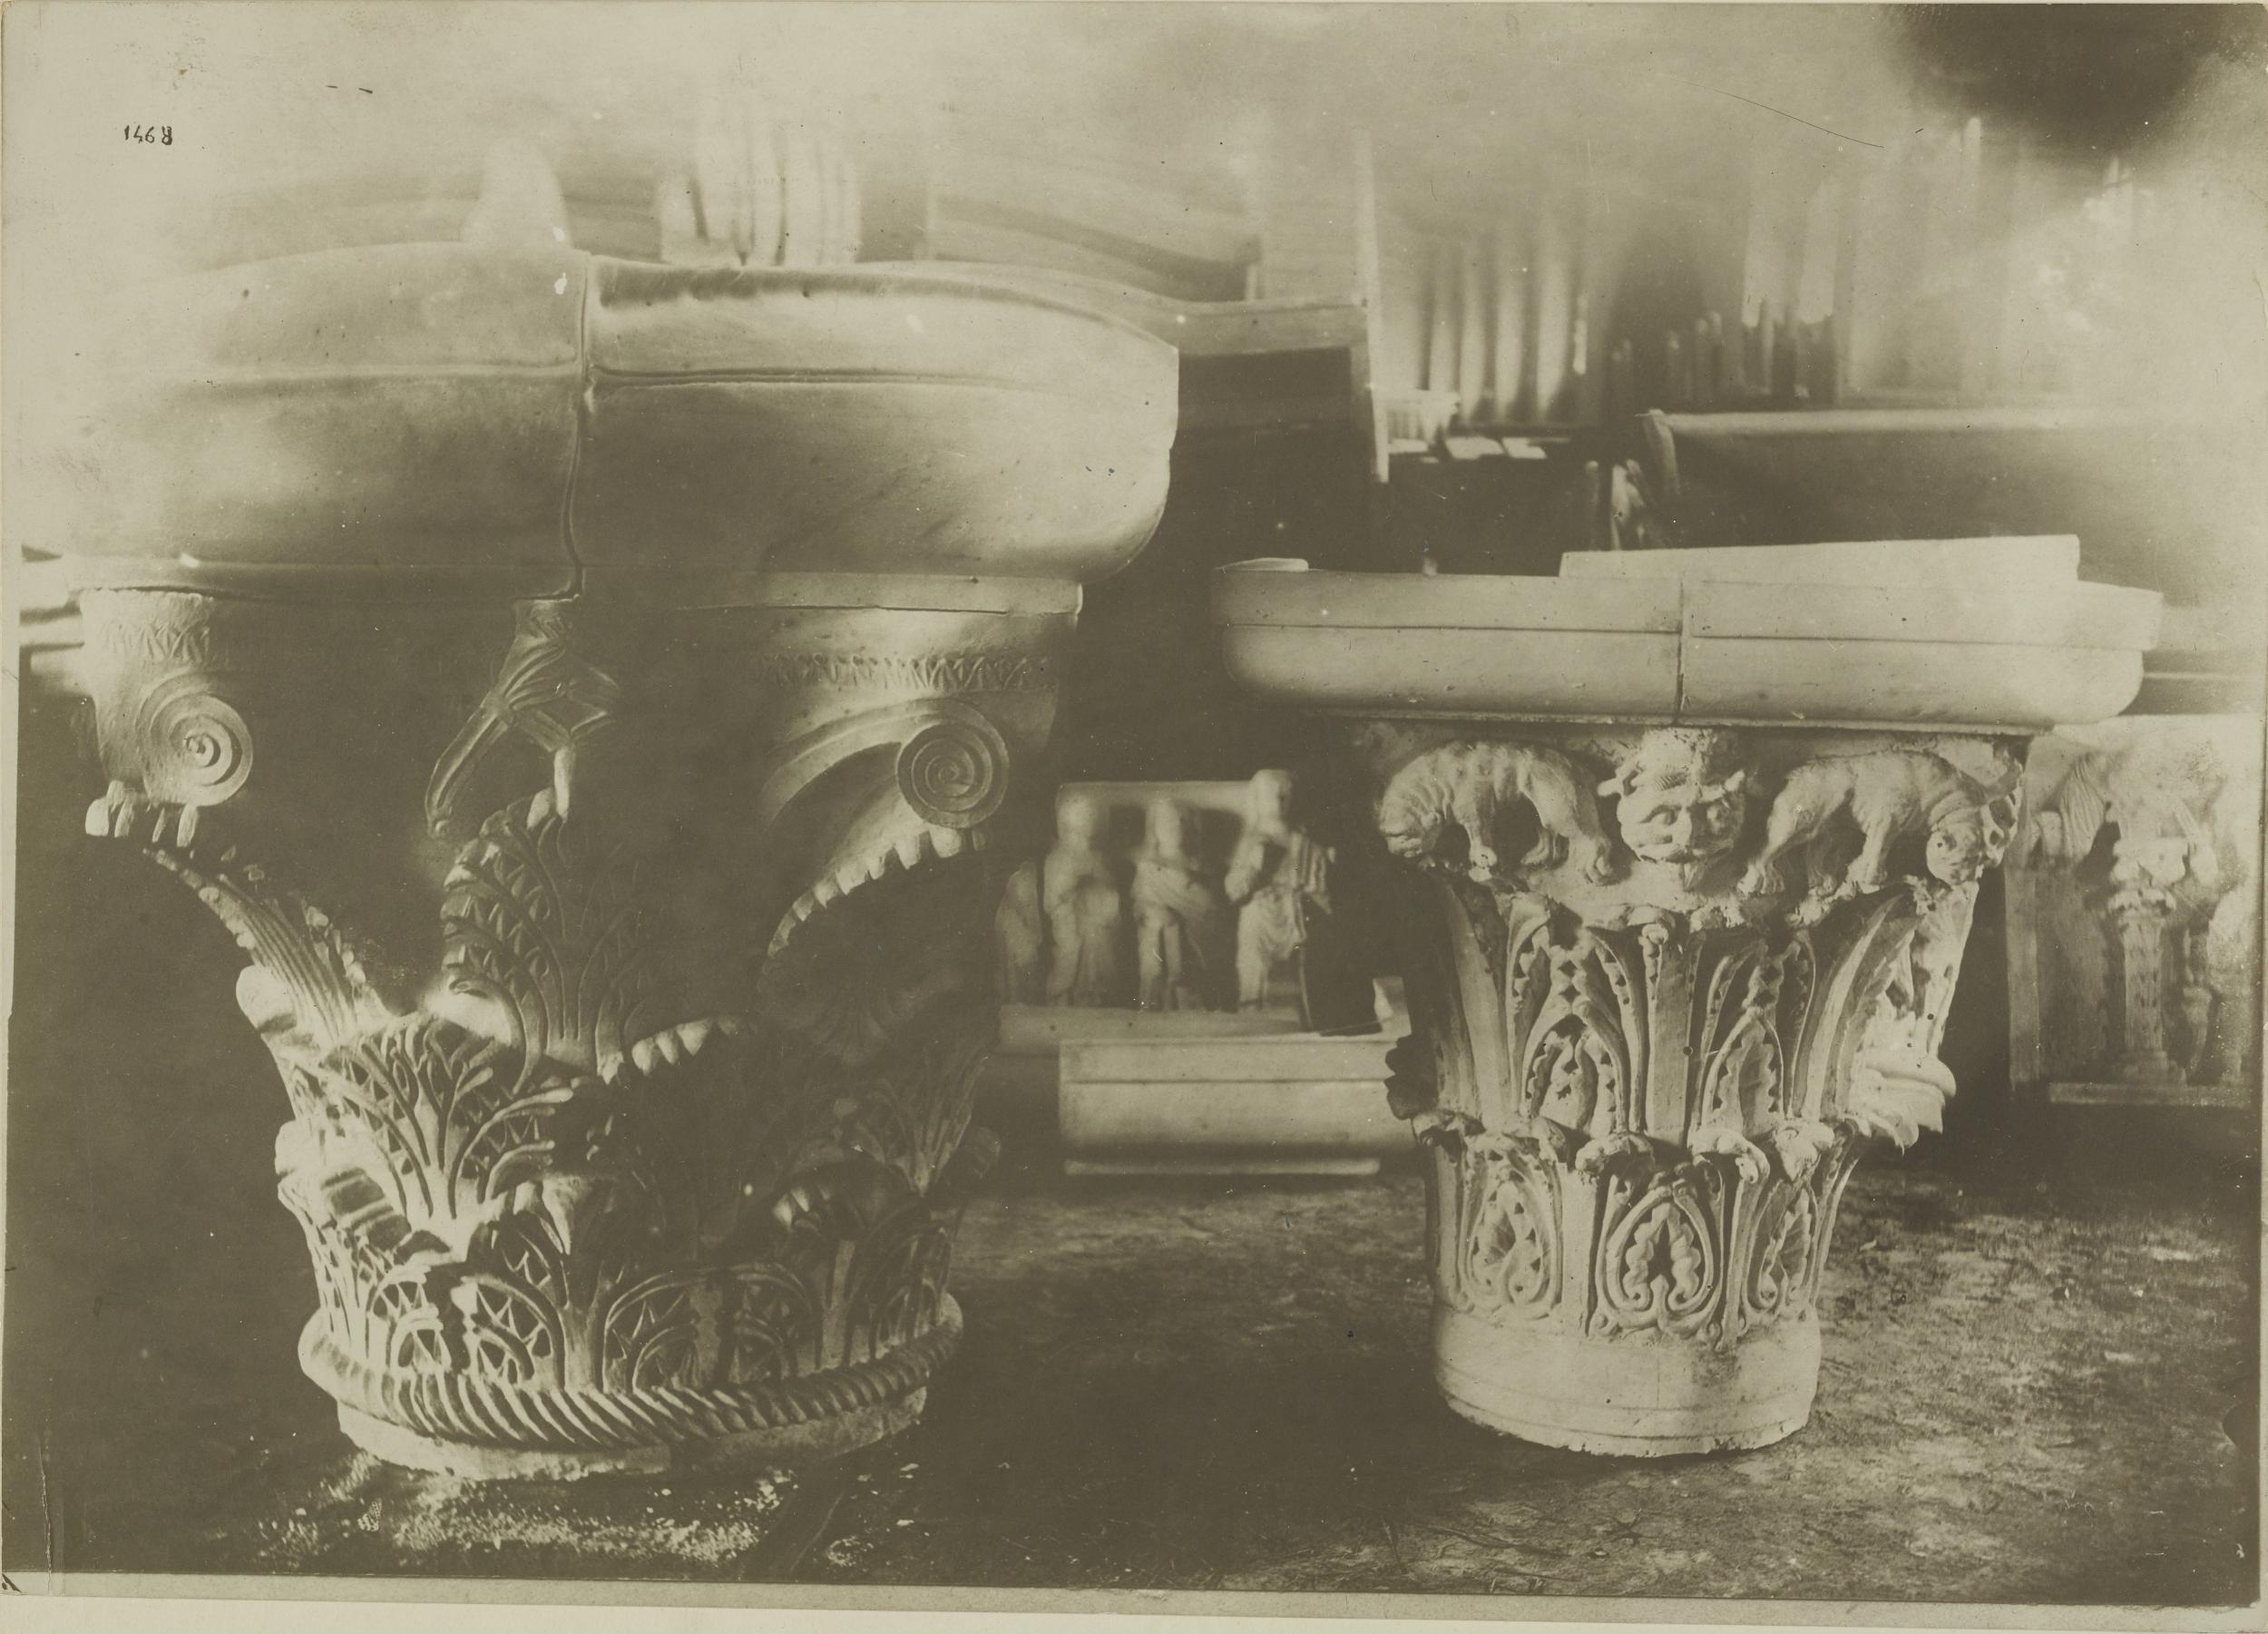 Fotografo non identificato, Bari - Castello, gipsoteca, calchi di capitelli, 1926-1950, gelatina ai sali d'argento/carta, MPI325318